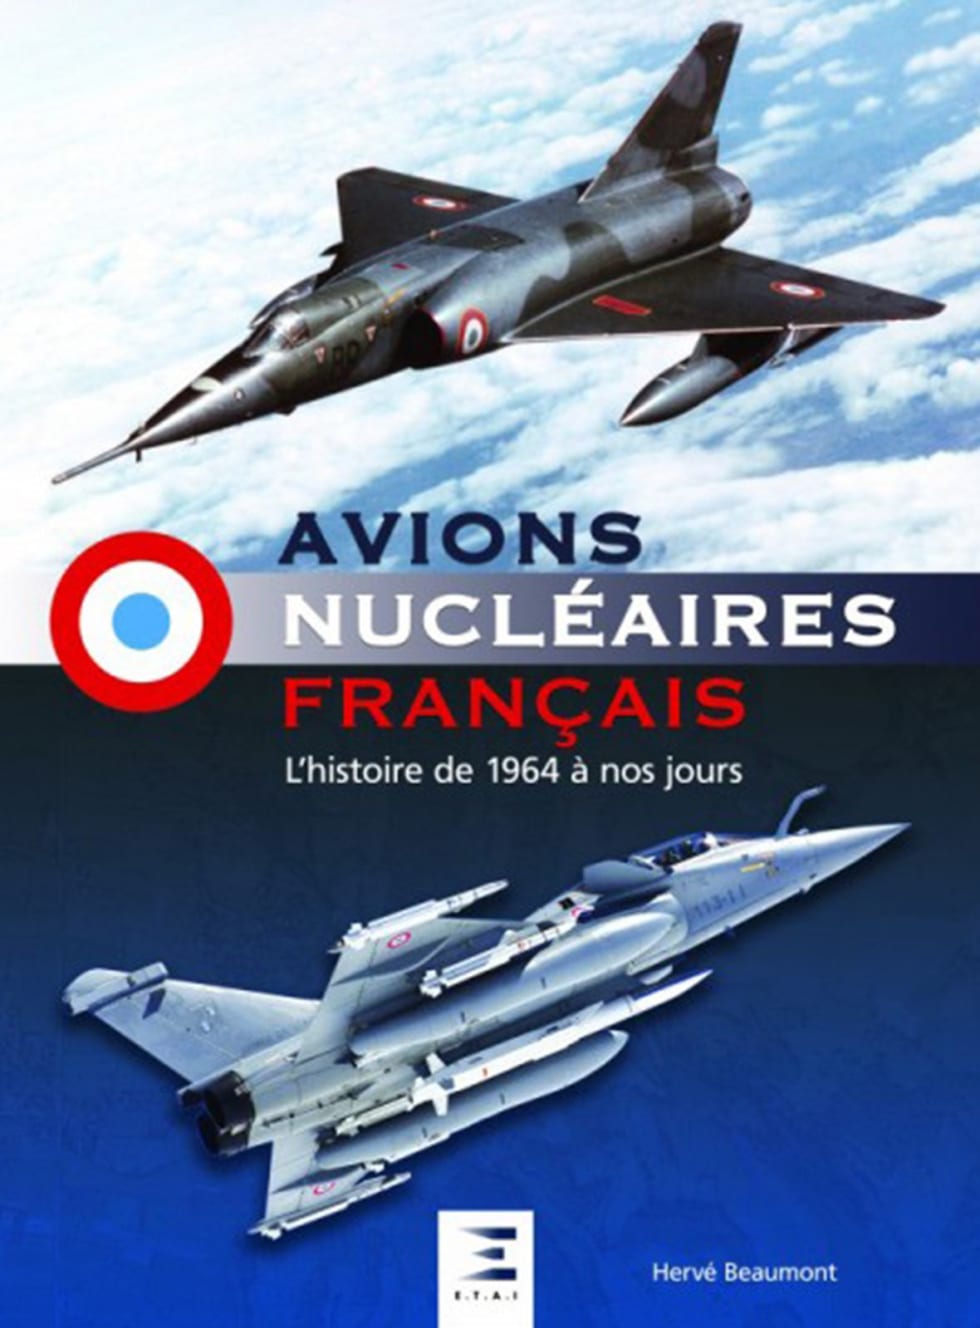 Avions nucléaires français, l’histoire de 1964 à nos jours